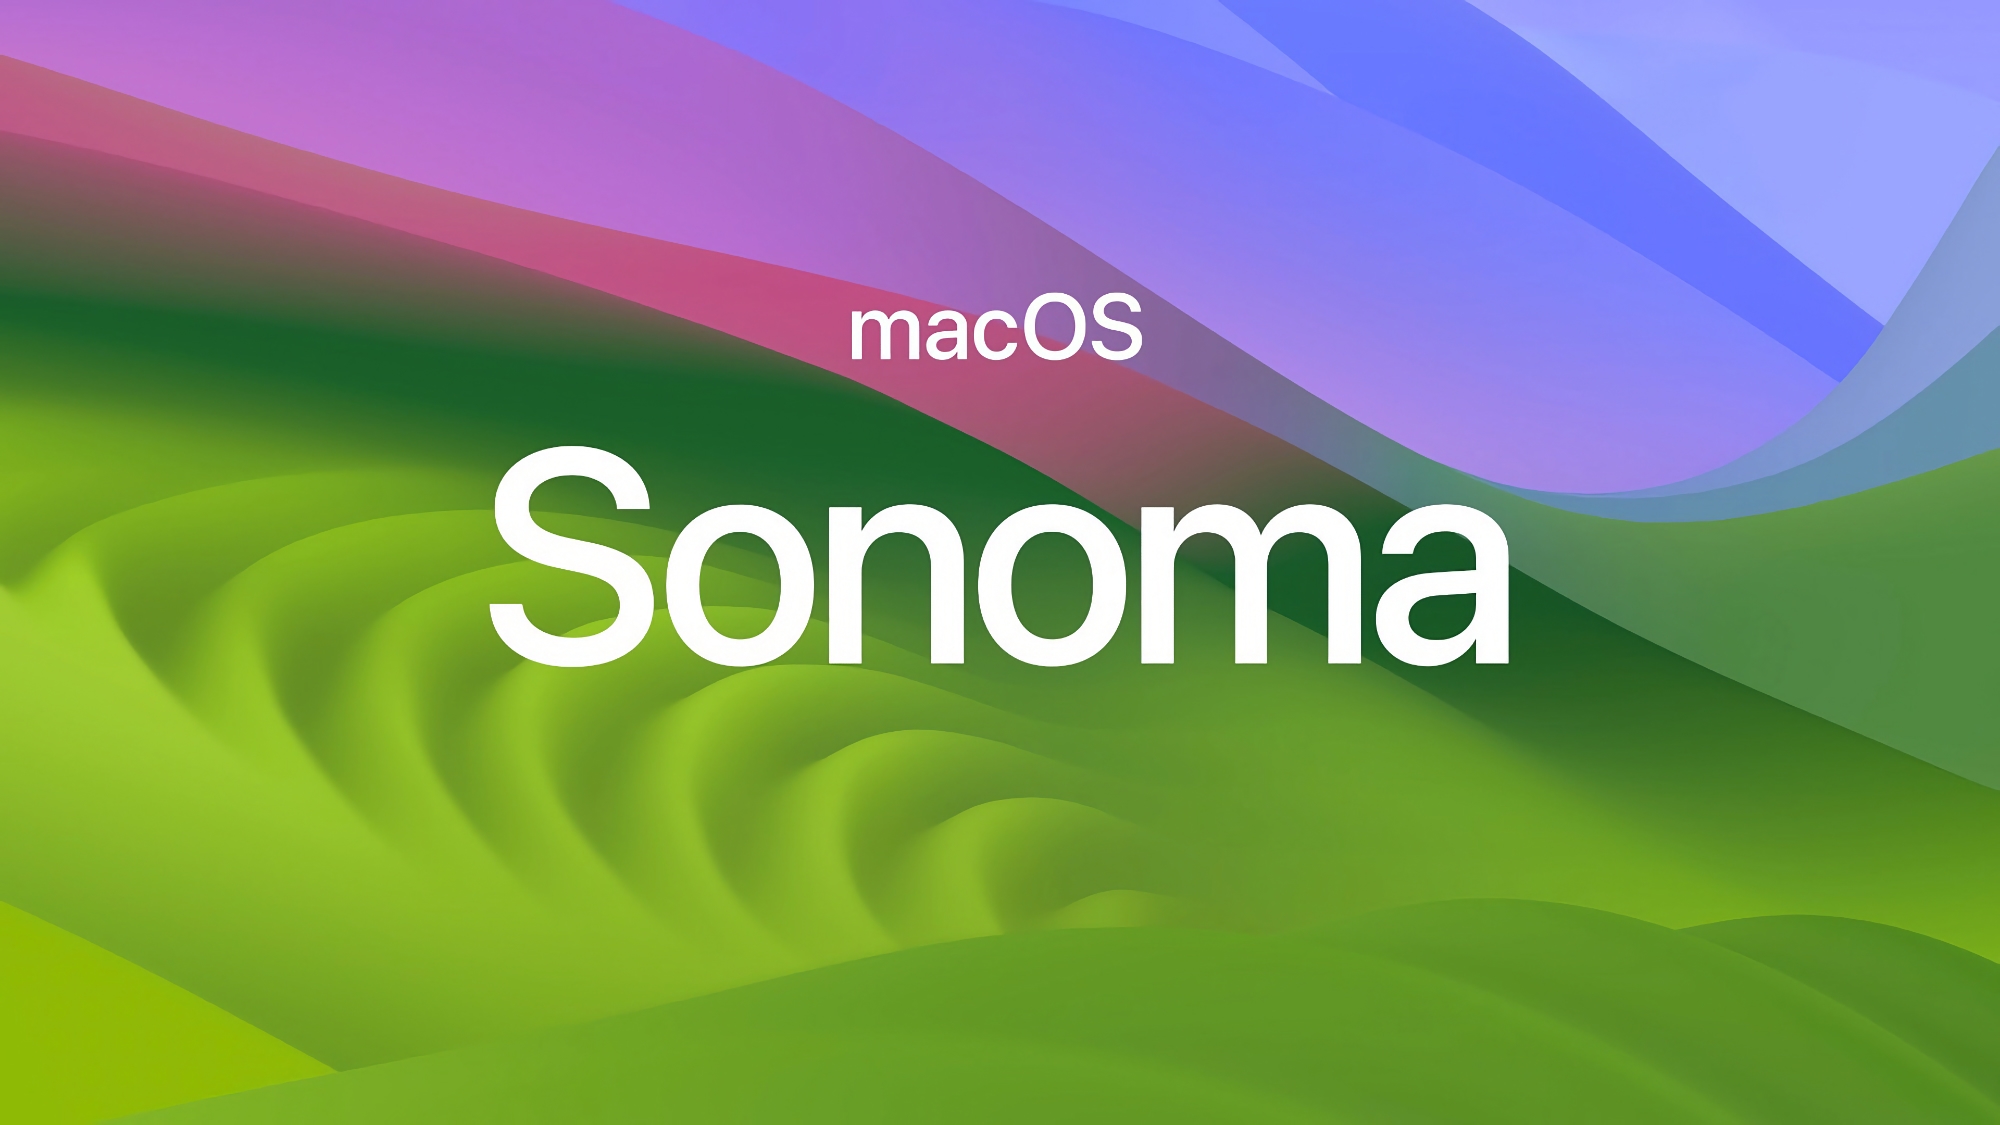 Fejlrettelser: Apple har udgivet macOS Sonoma 14.3.1